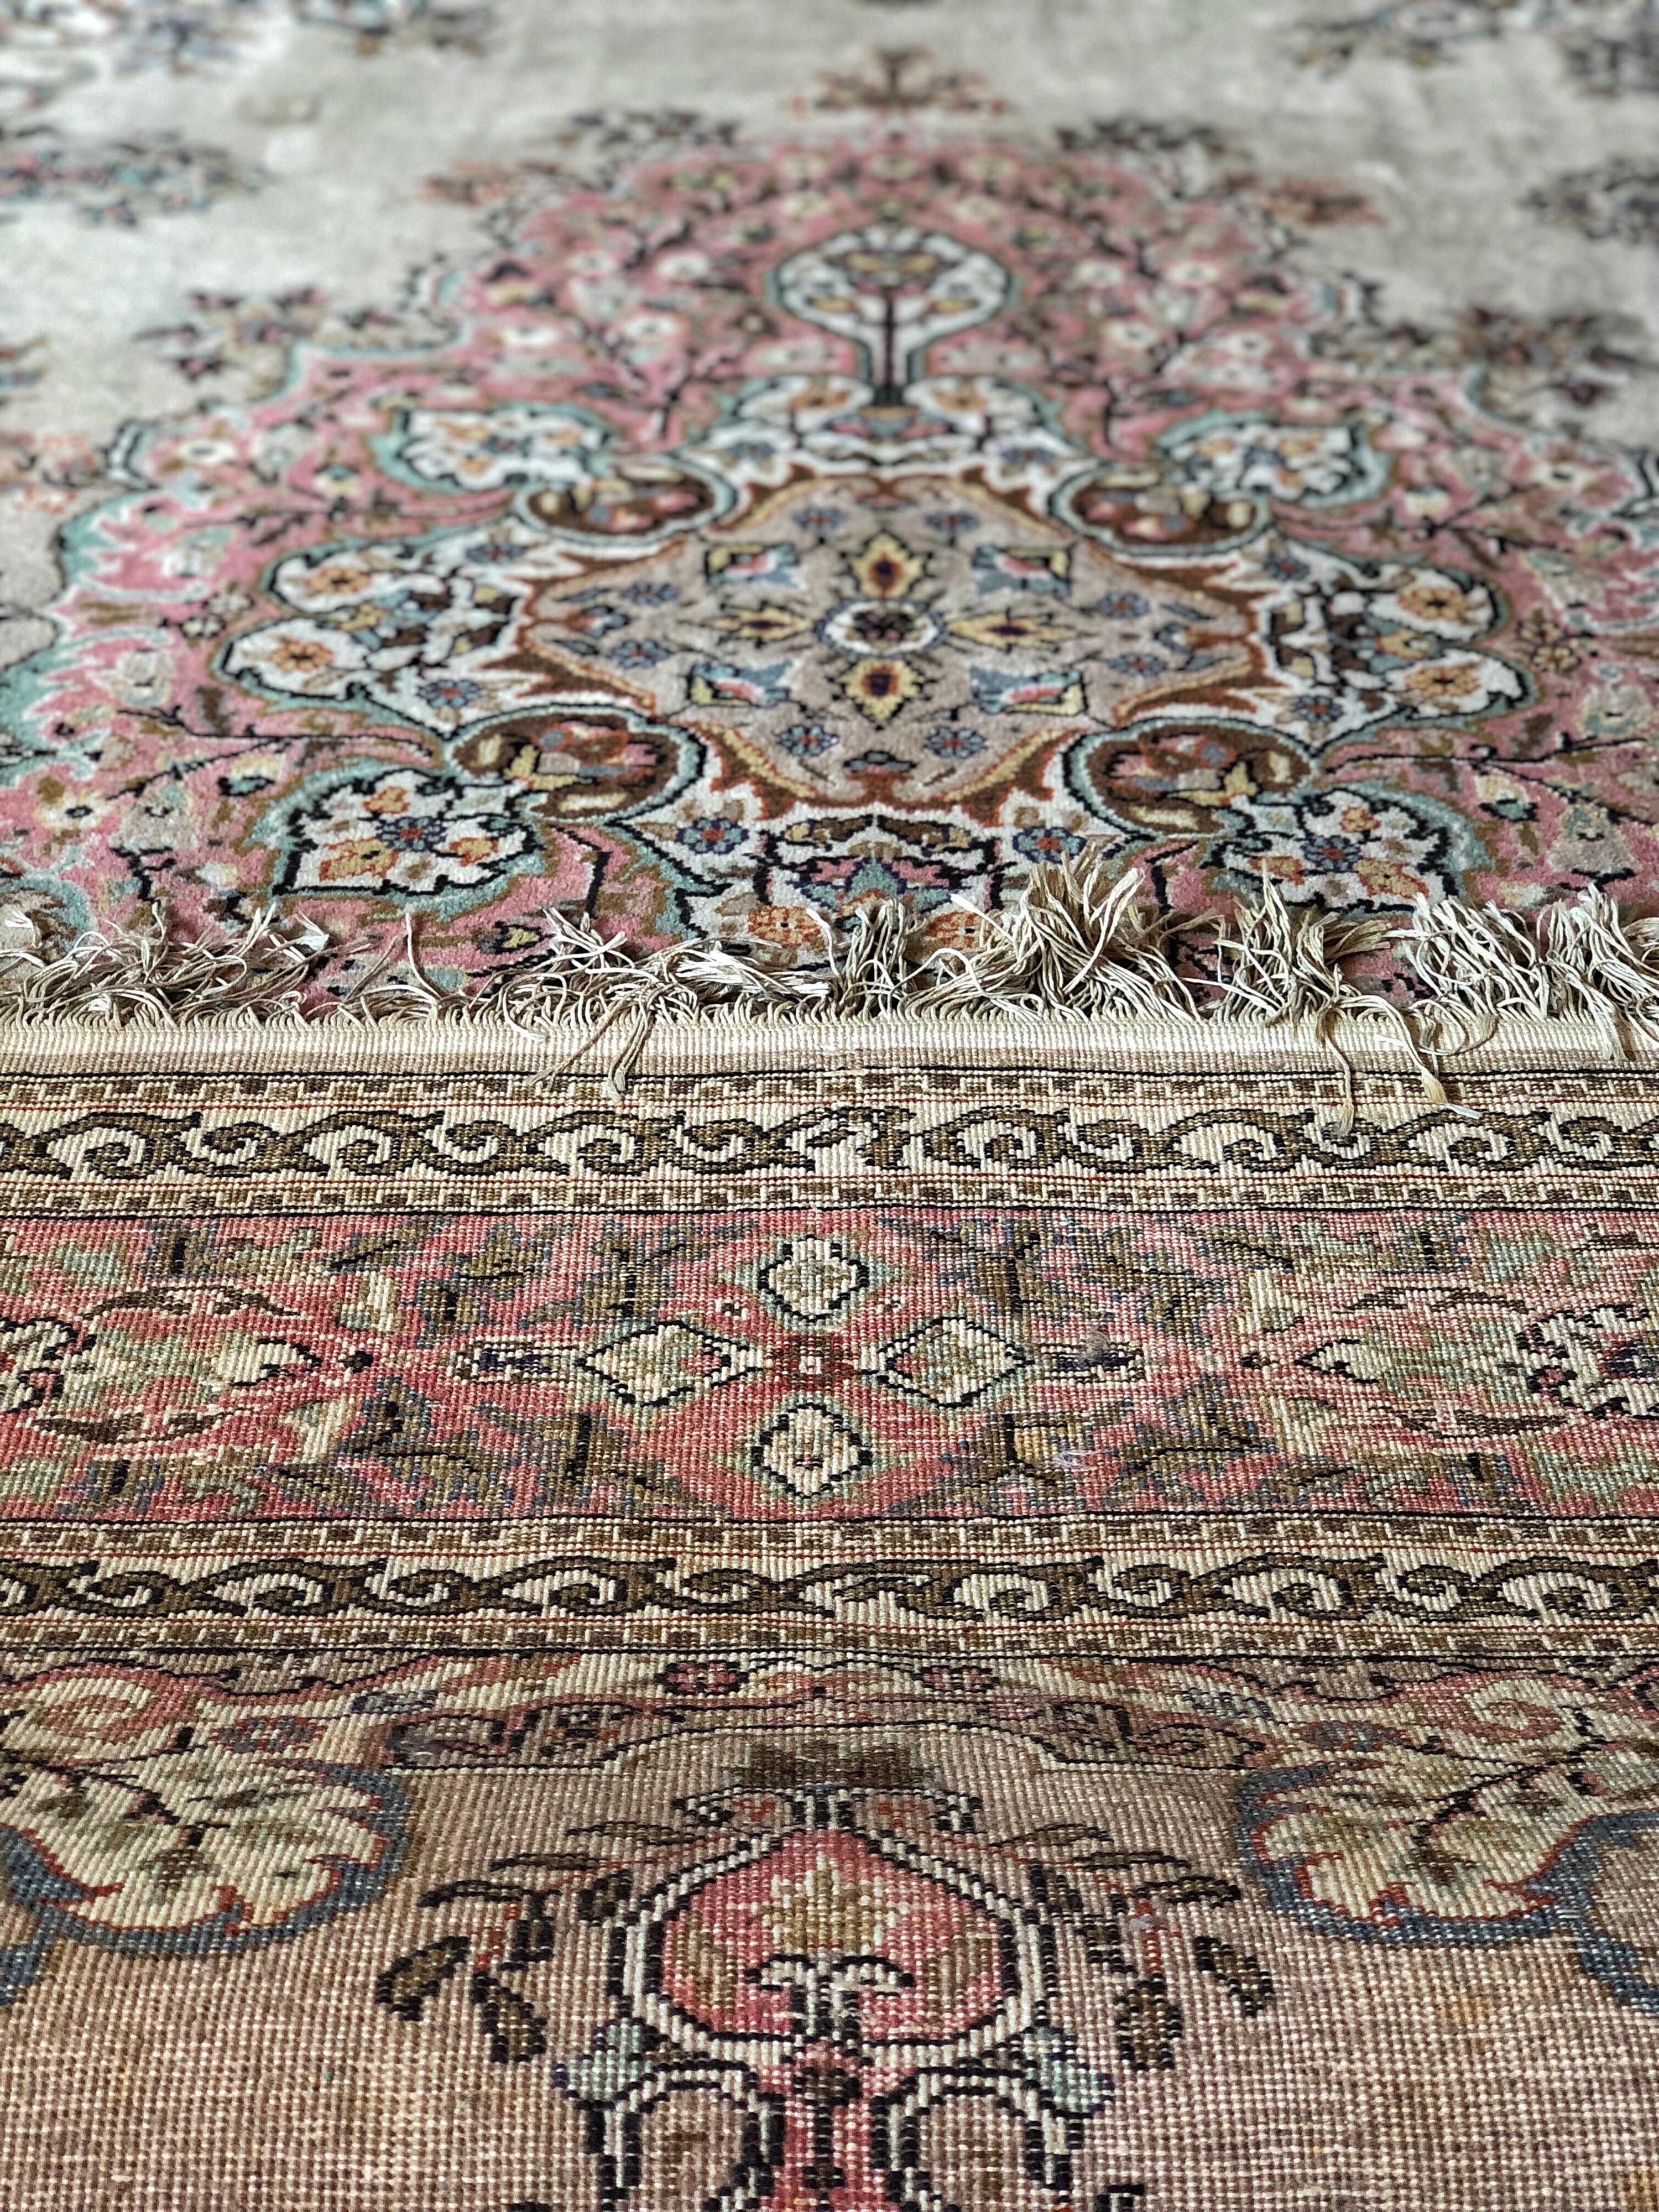 Machine-Made Turkish Large Carpet Kilim Pink Blue Floral Motives Elegant Asian Design SALE 